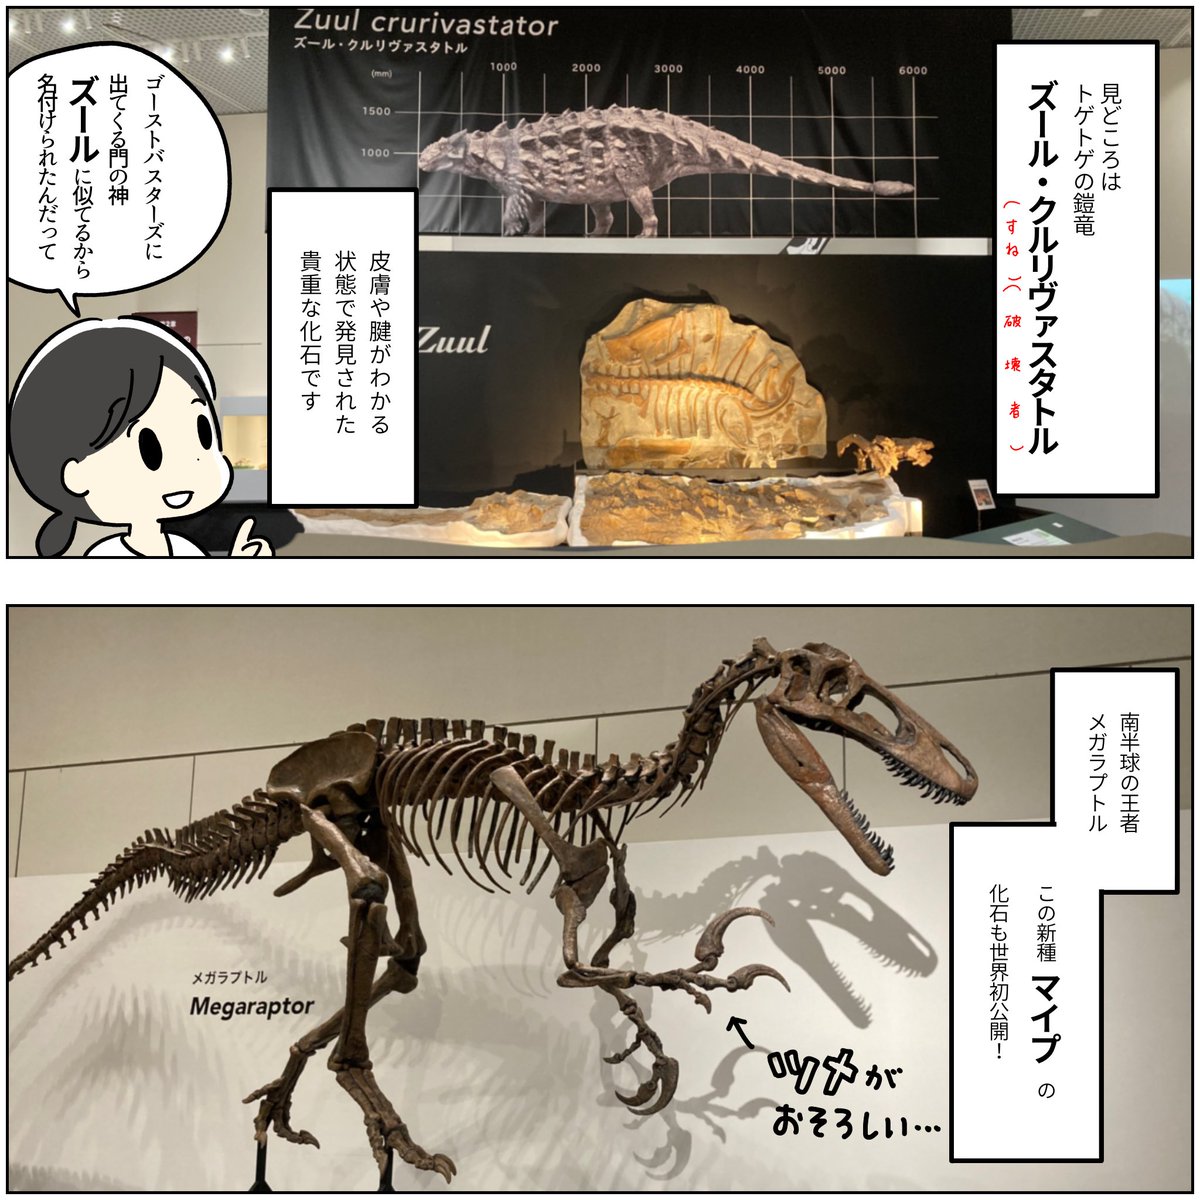 展覧会レポ漫画  🦕恐竜博2023 大阪市立自然史博物館  2023.9.24まで  ふりがなのついた子ども向け解説パネル、音声ガイド、動画解説があるのでチビッコたちにもぜひ行ってほしい!!